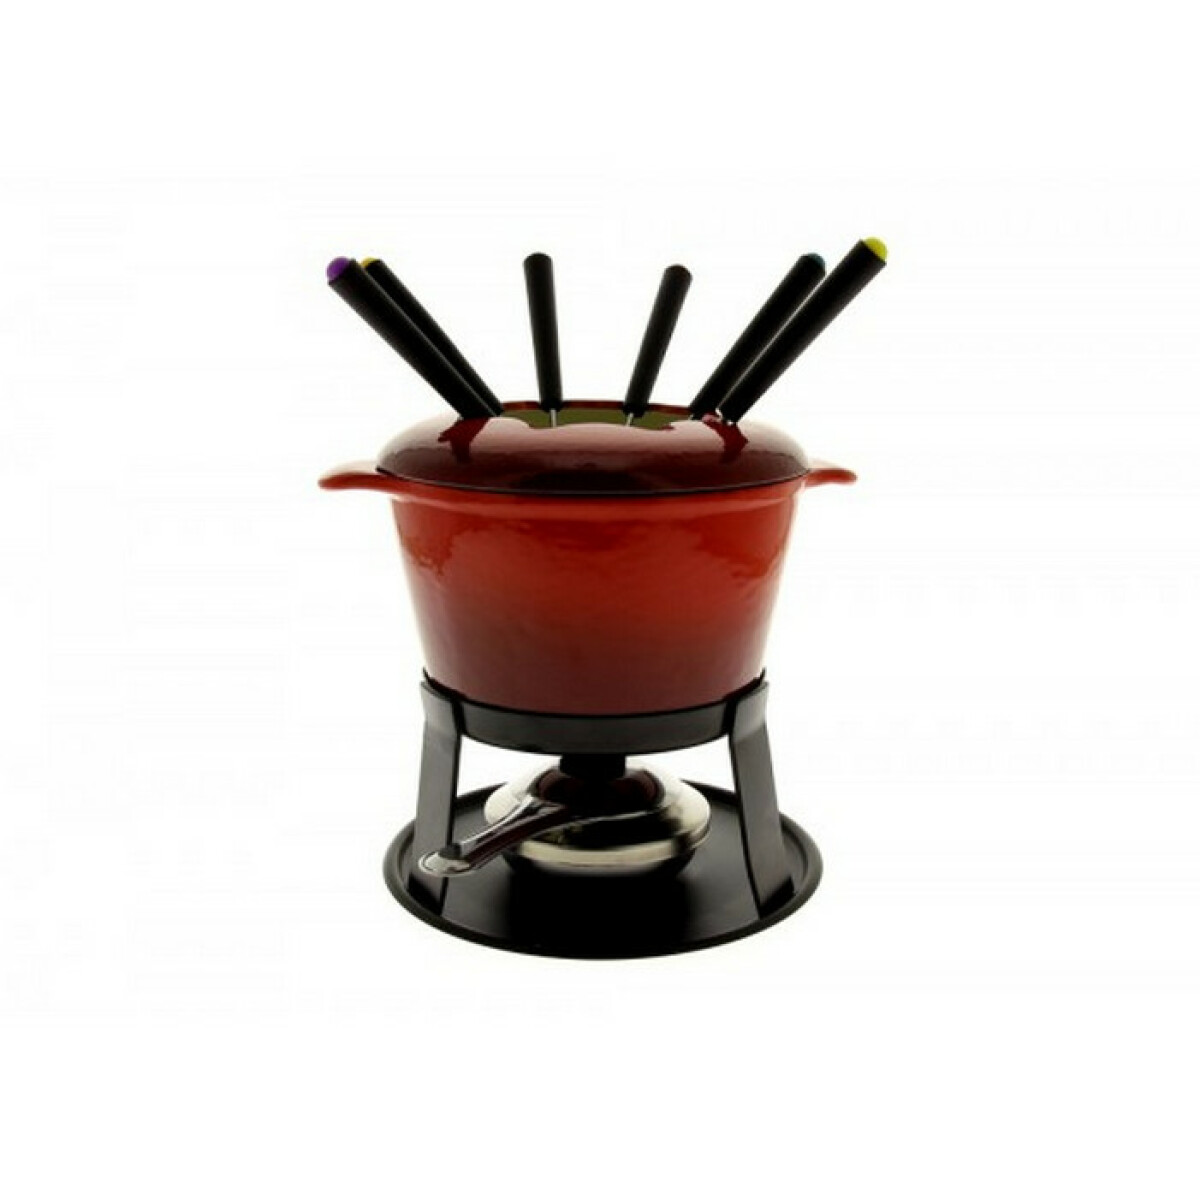 Appareil à fondue Table And Cook Service à fondue 6 fourchettes rouge - hhf0255 - TABLEANDCOOK